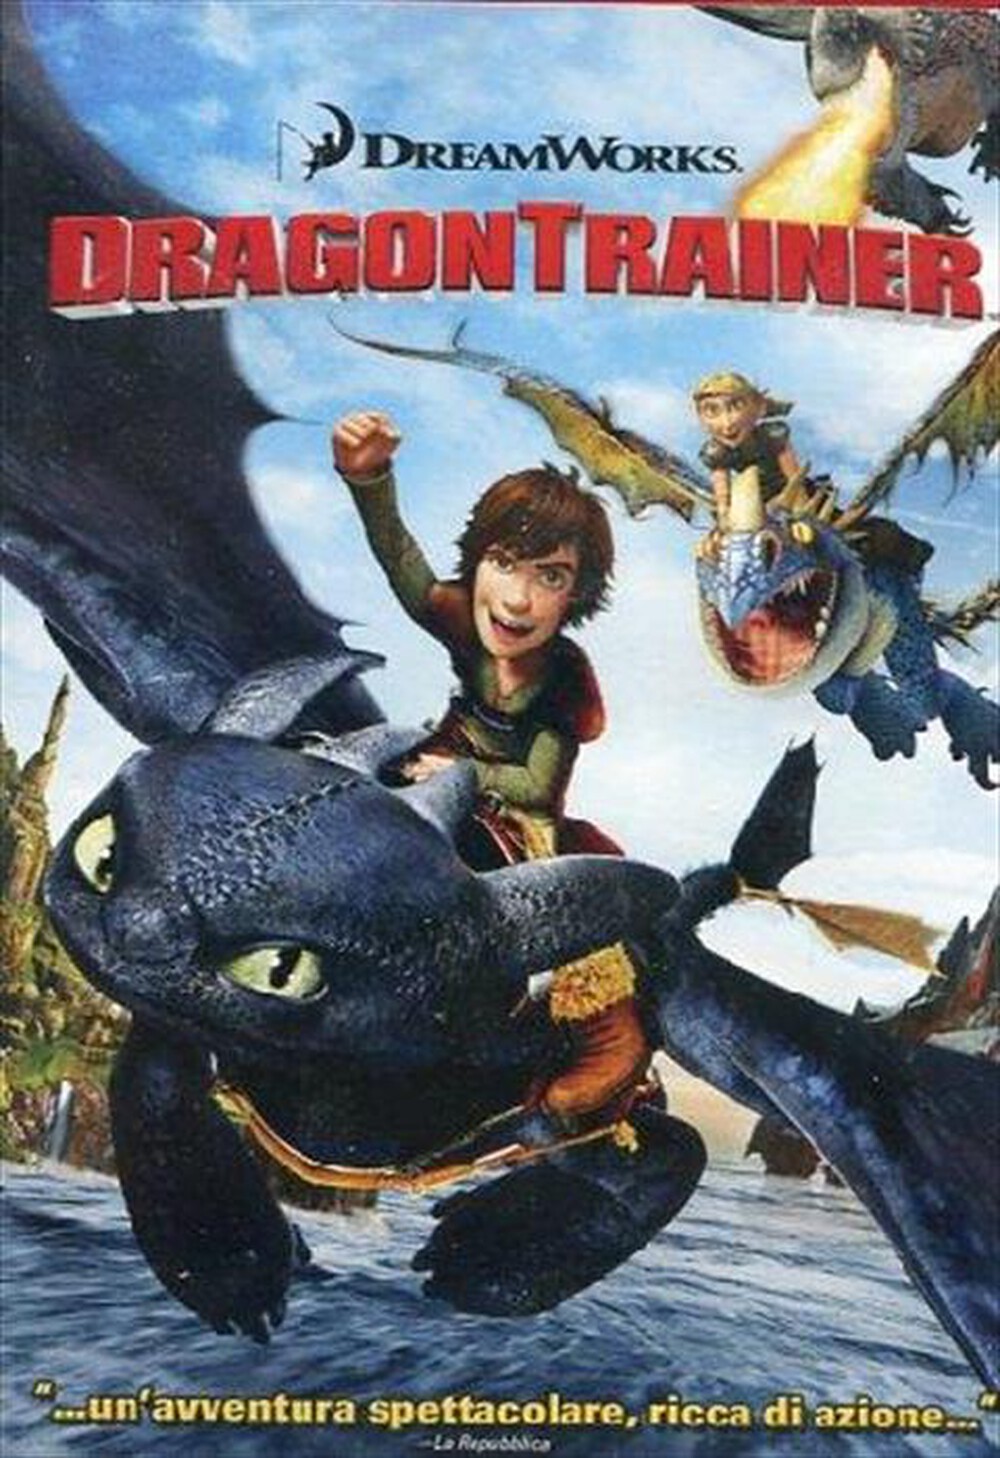 "WALT DISNEY - Dragon Trainer"